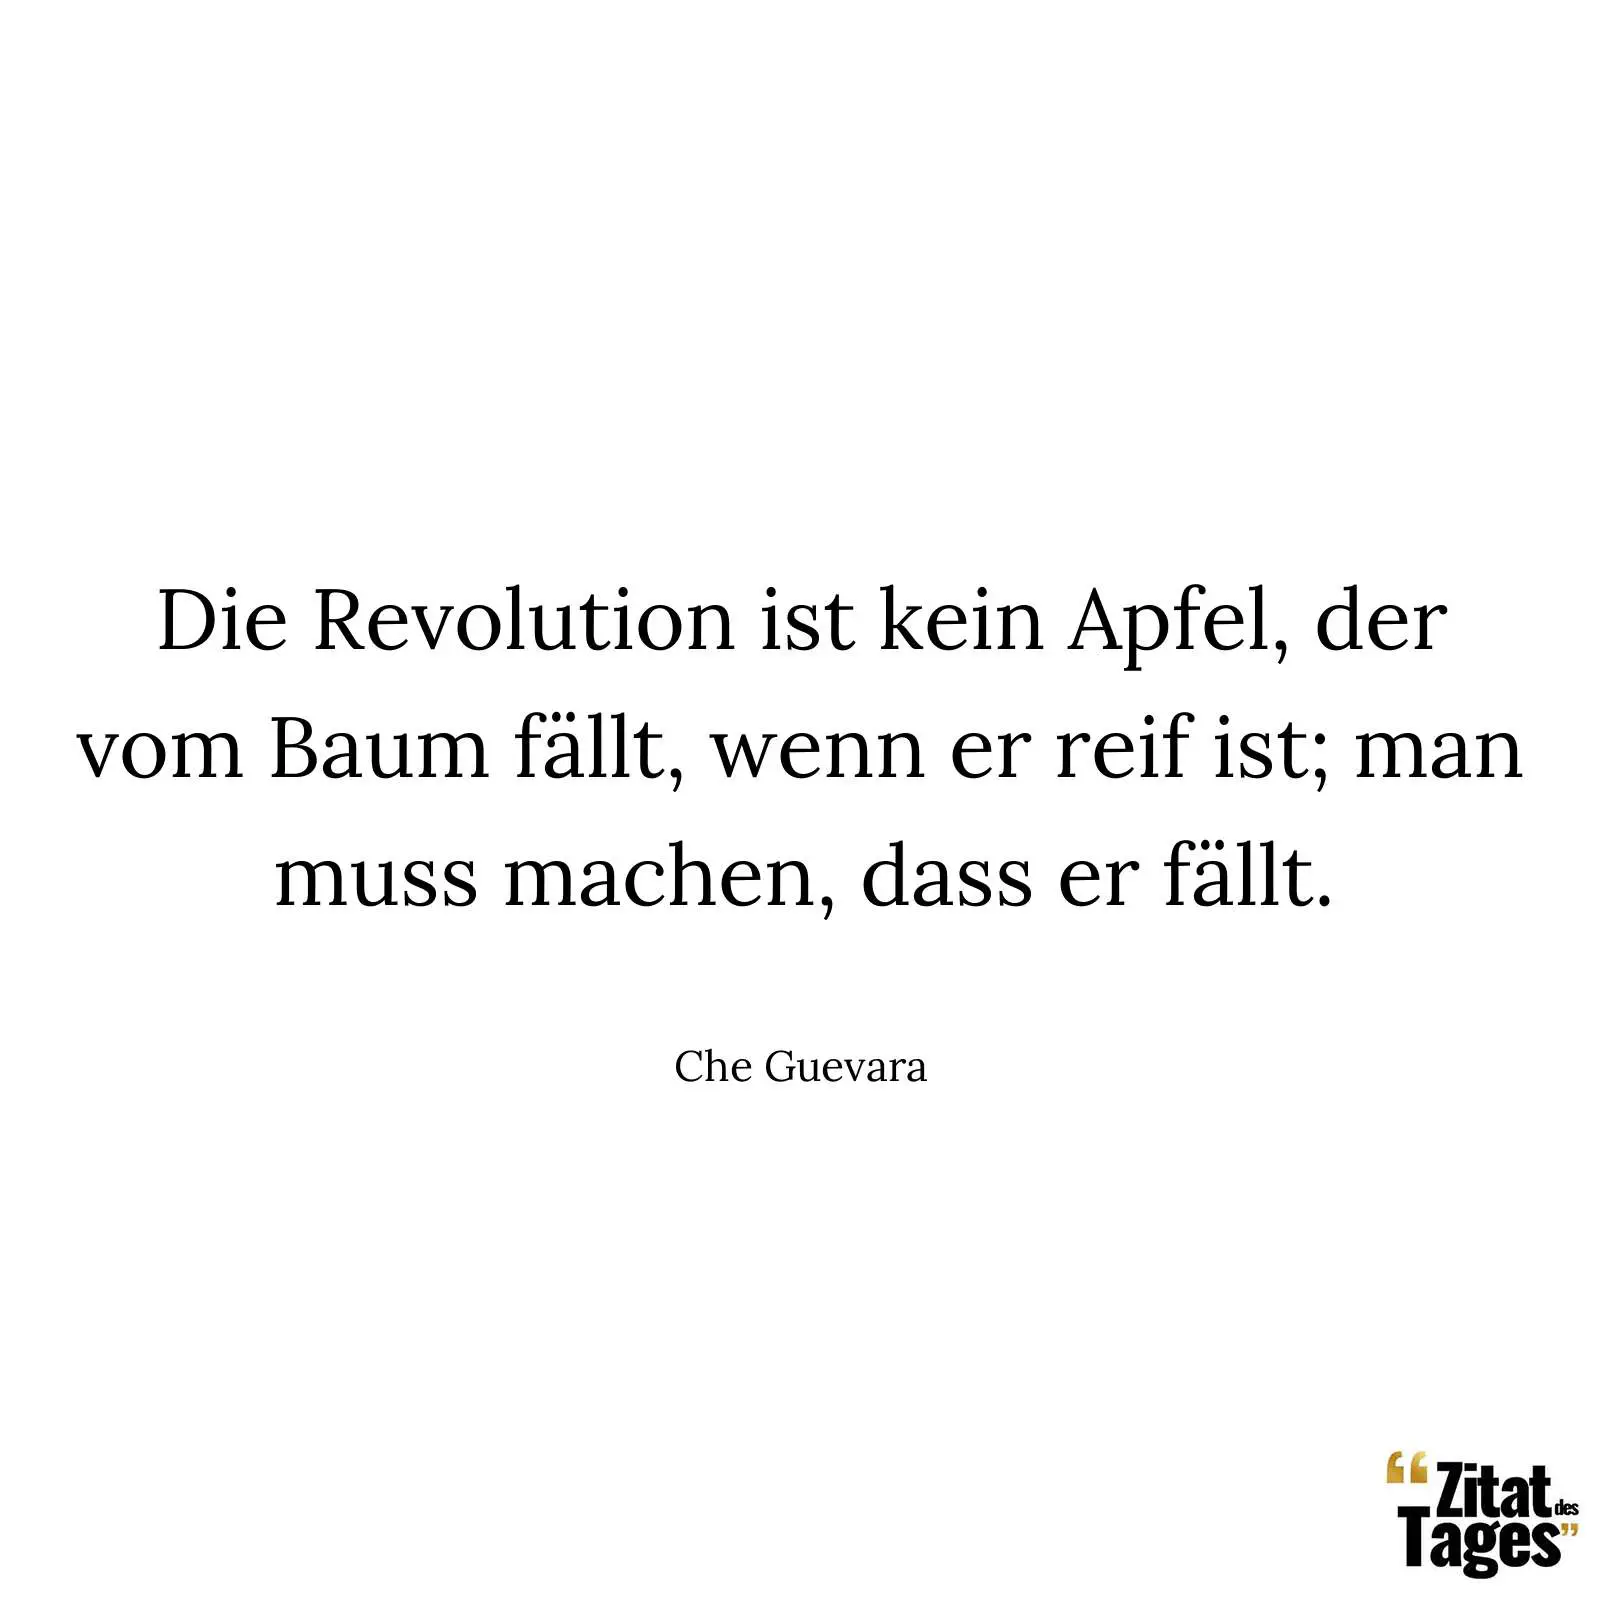 Die Revolution ist kein Apfel, der vom Baum fällt, wenn er reif ist; man muss machen, dass er fällt. - Che Guevara